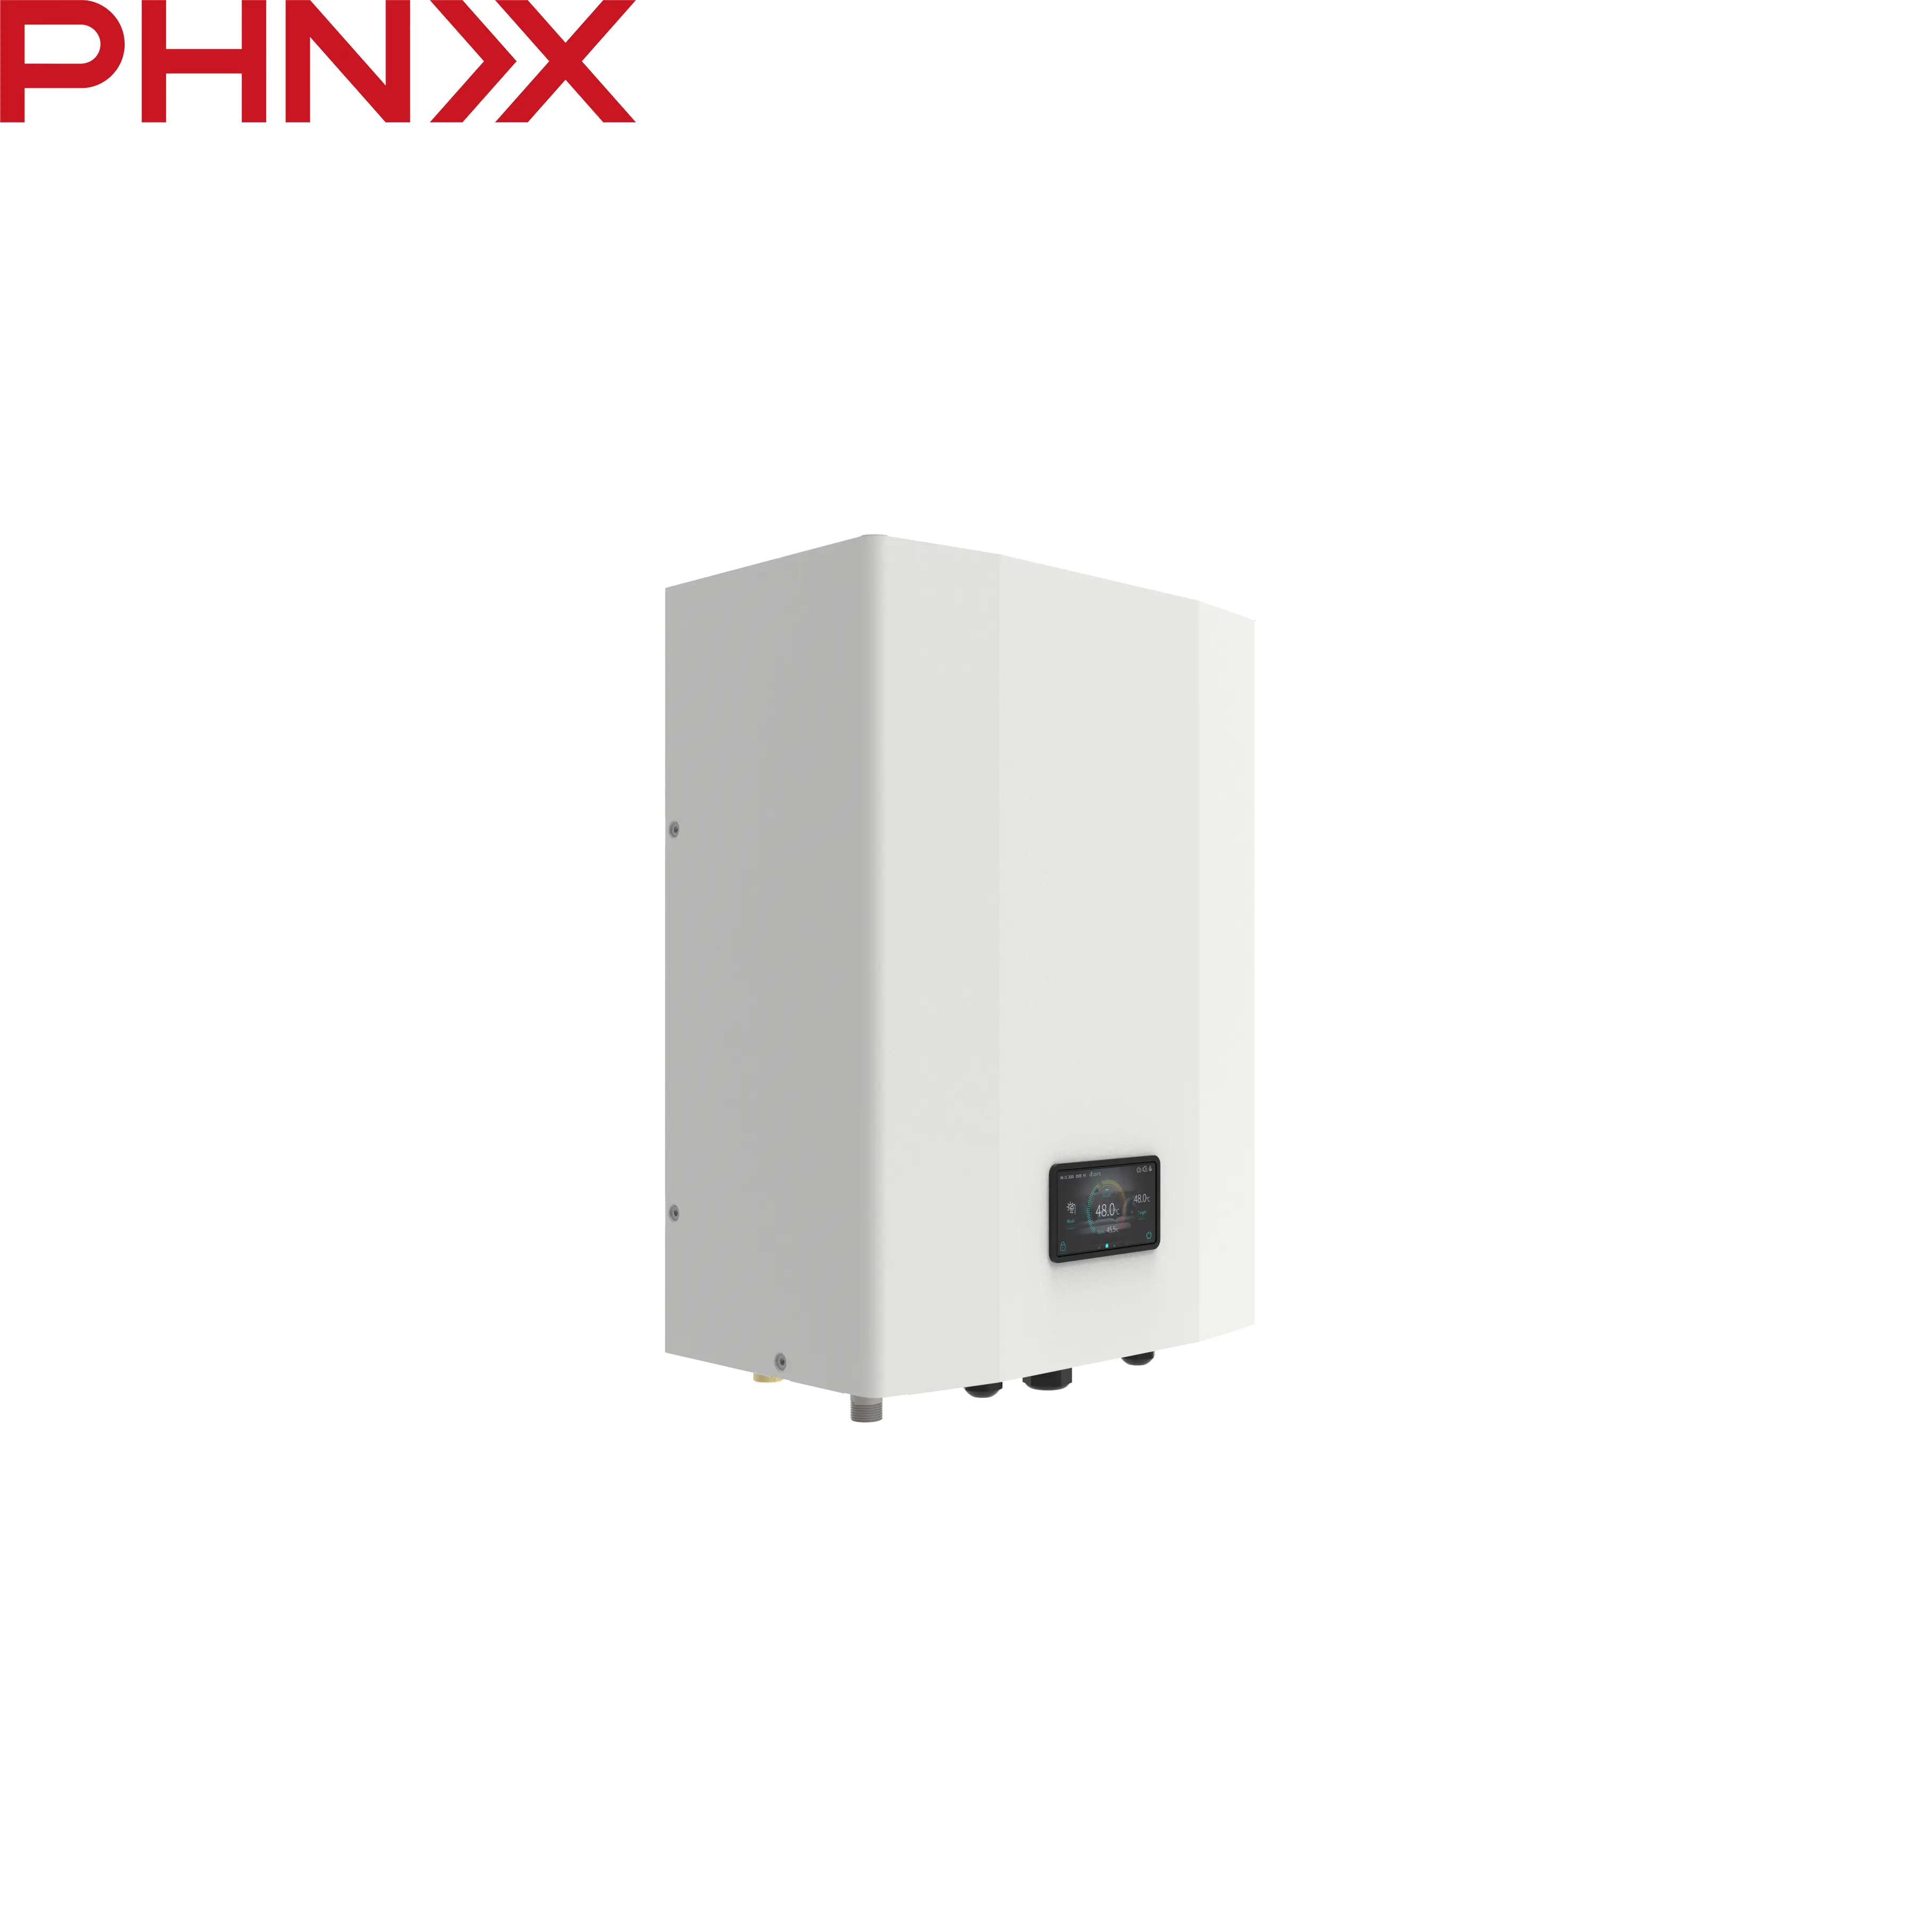 PHNIX hidrolik modül EasyHydro uzay ısıtma ve sıcak su kuzey amerikan standardı için ısı pompası ile bağlayın